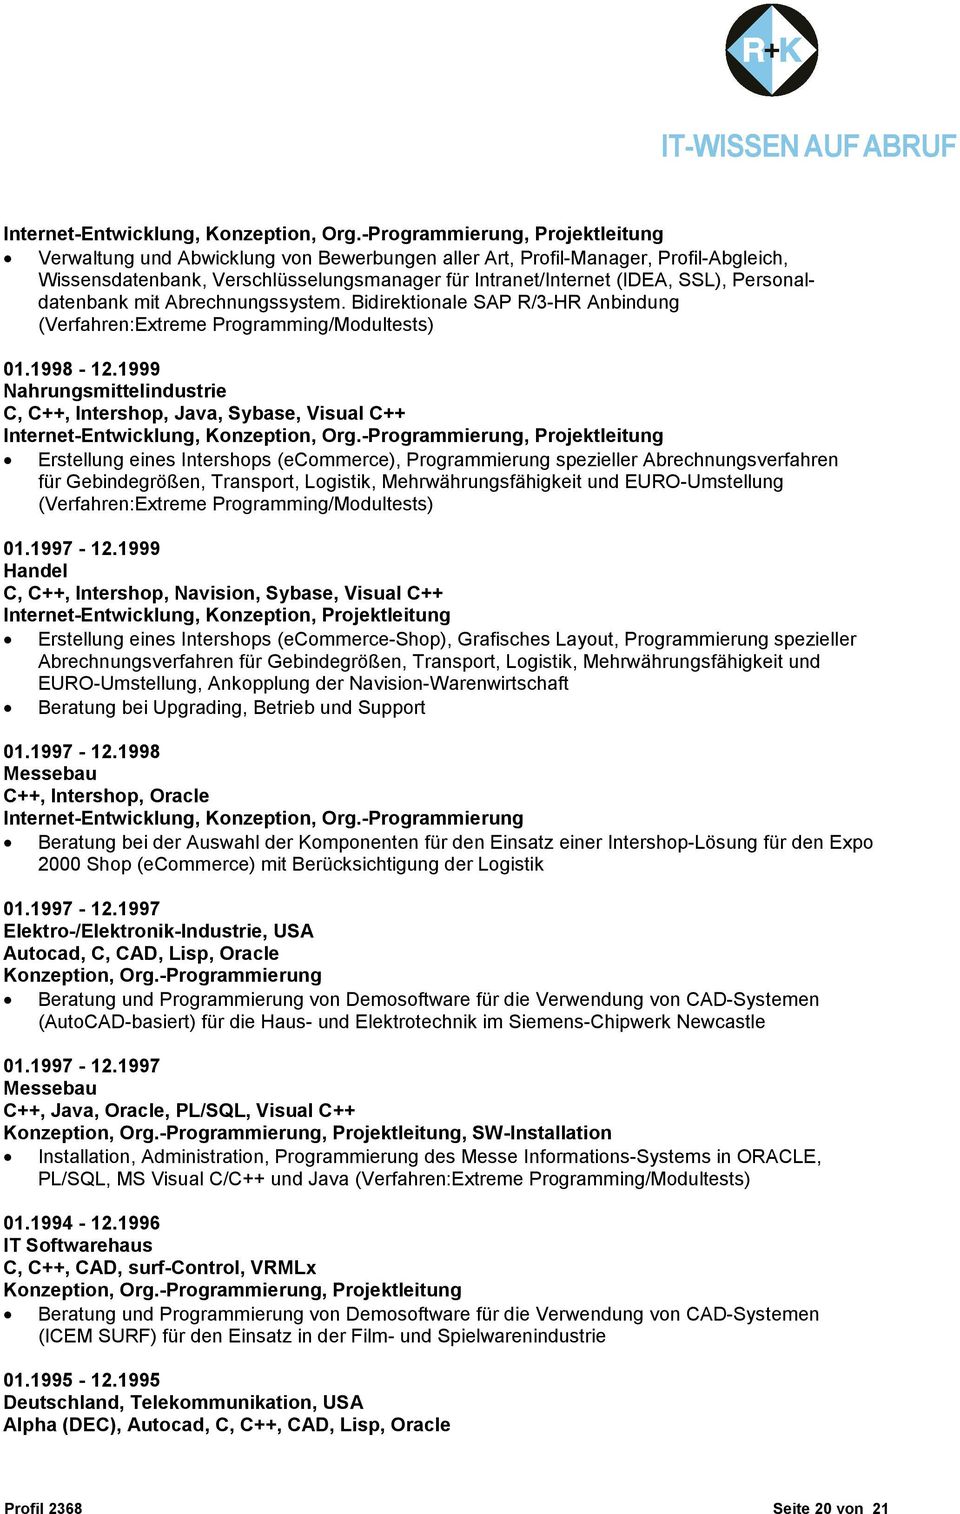 Personaldatenbank mit Abrechnungssystem. Bidirektionale SAP R/3-HR Anbindung (Verfahren:Extreme Programming/Modultests) 01.1998-12.